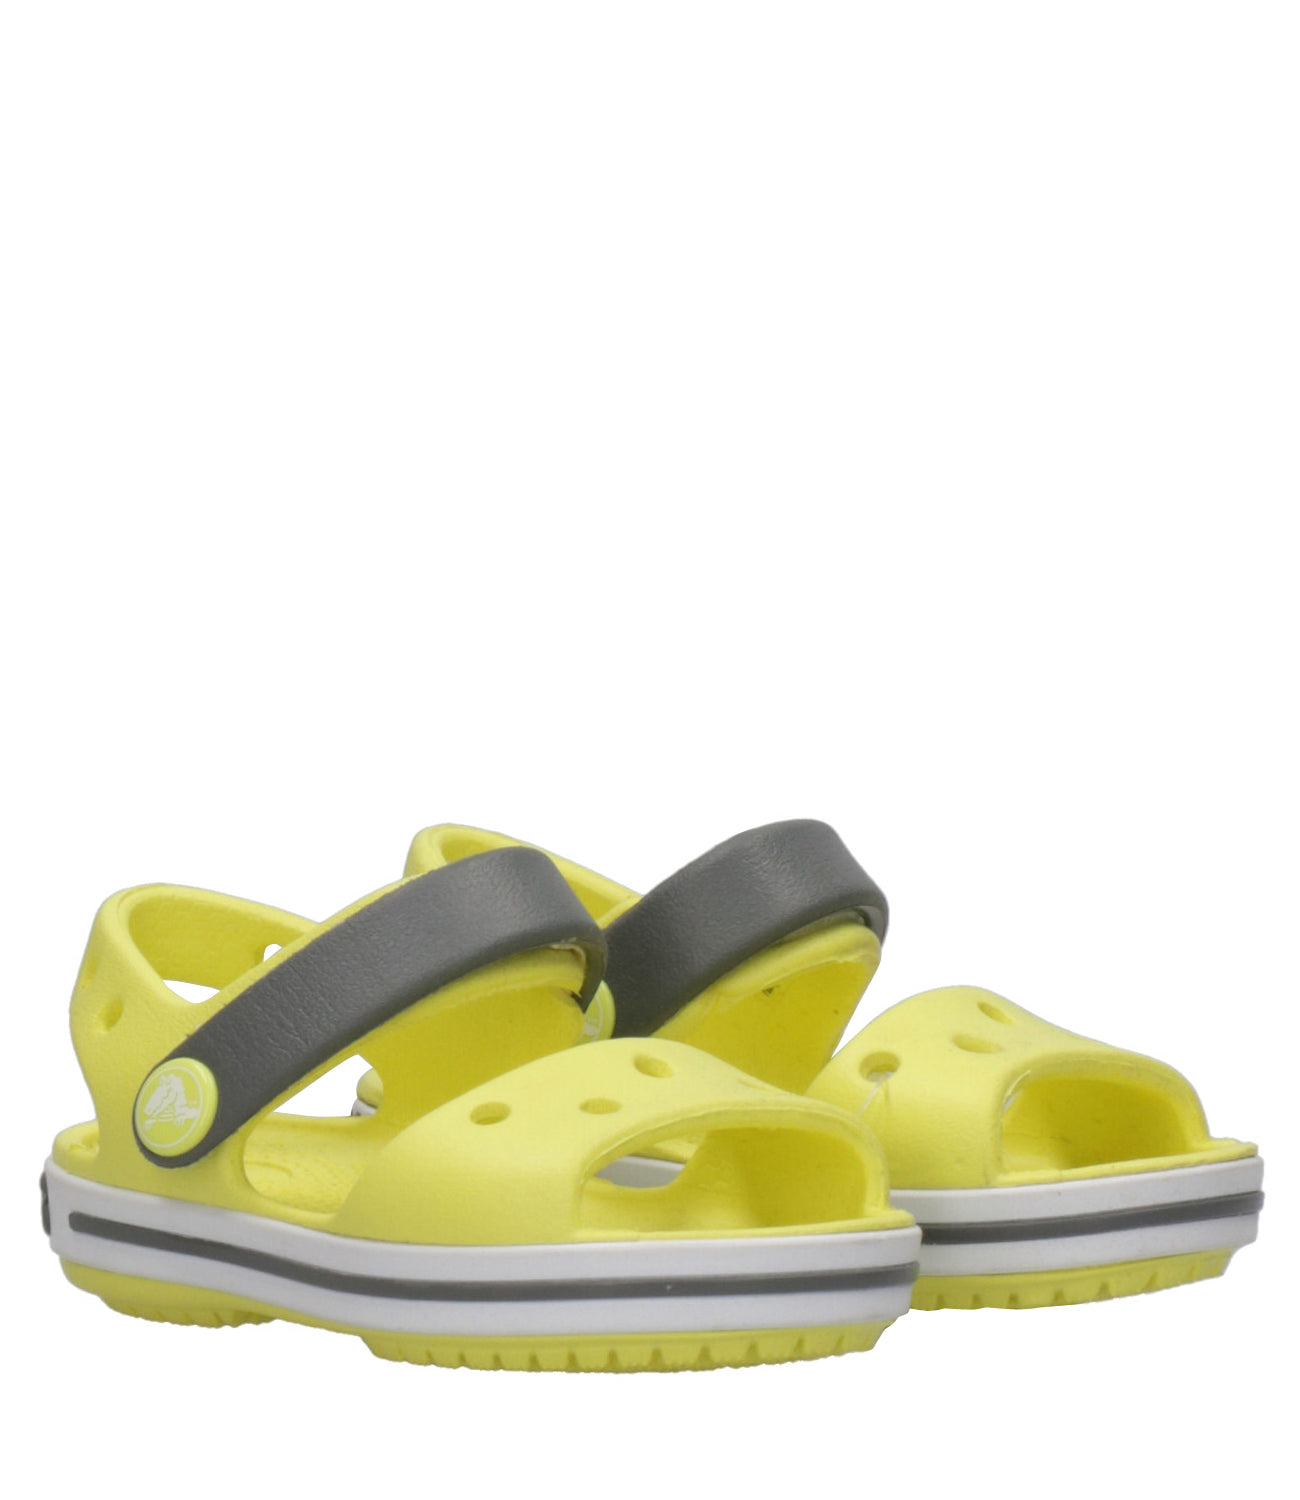 Crocs Kids | Crocband Sandal Sabot Yellow and Gray